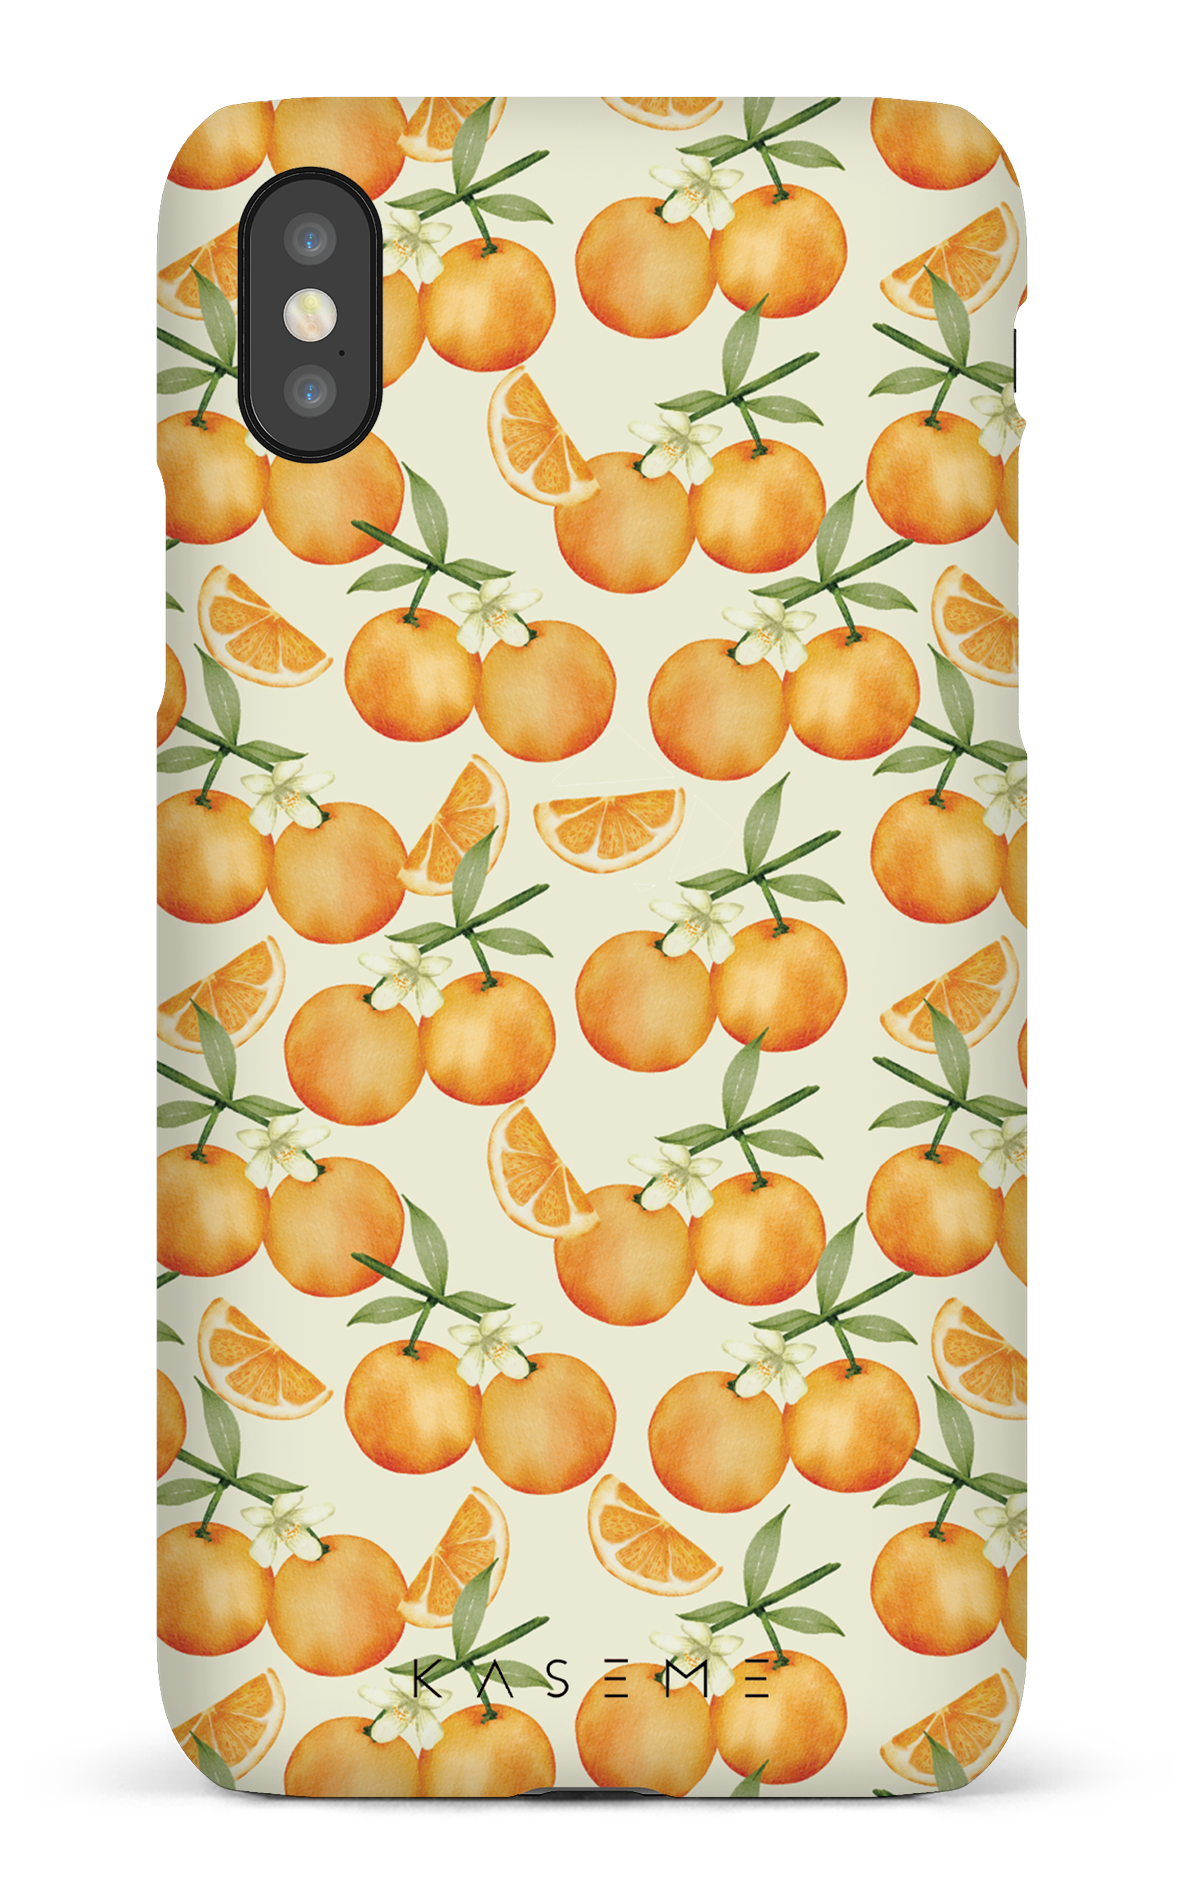 Tangerine - iPhone X/XS